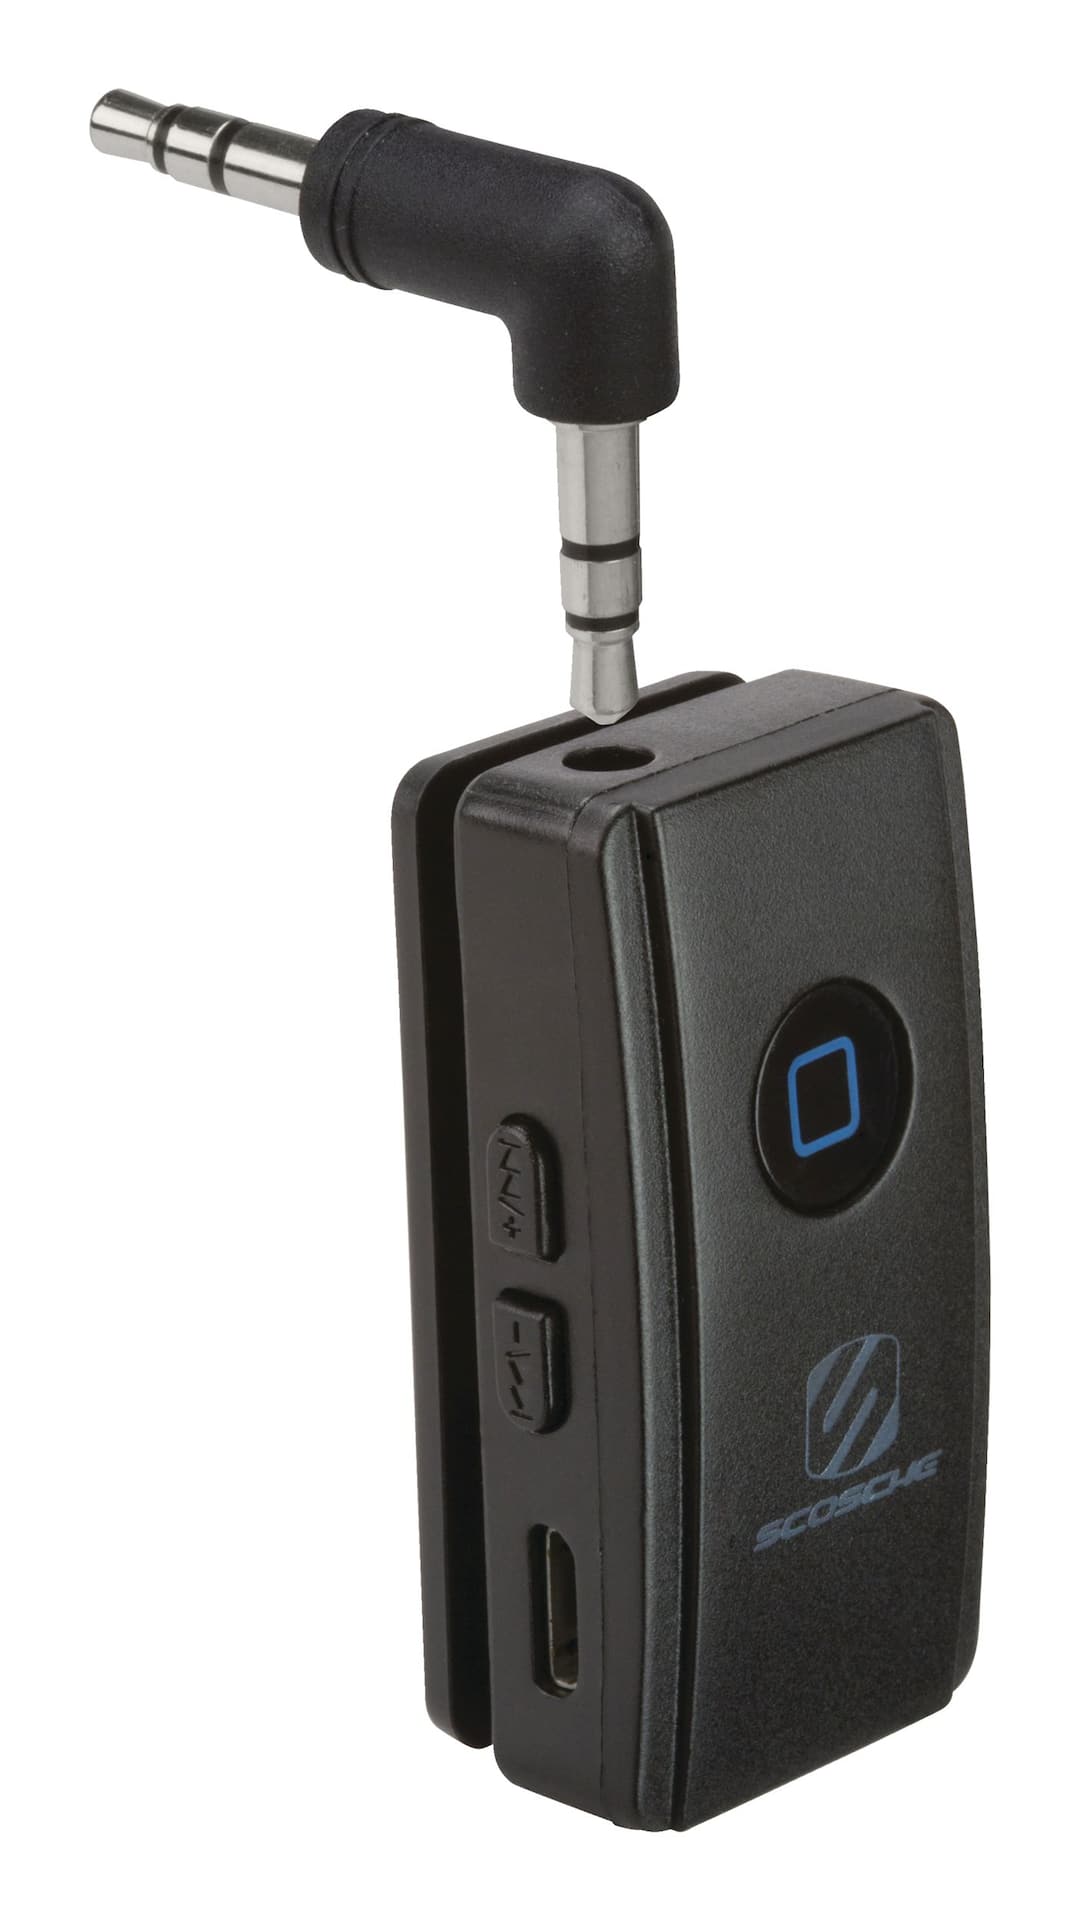 Bluetooth 5.0 Transmetteur Récepteur 3-en-1, Adaptateur audio sans fil 3,5  mm pour Tv Pc Casque Home S